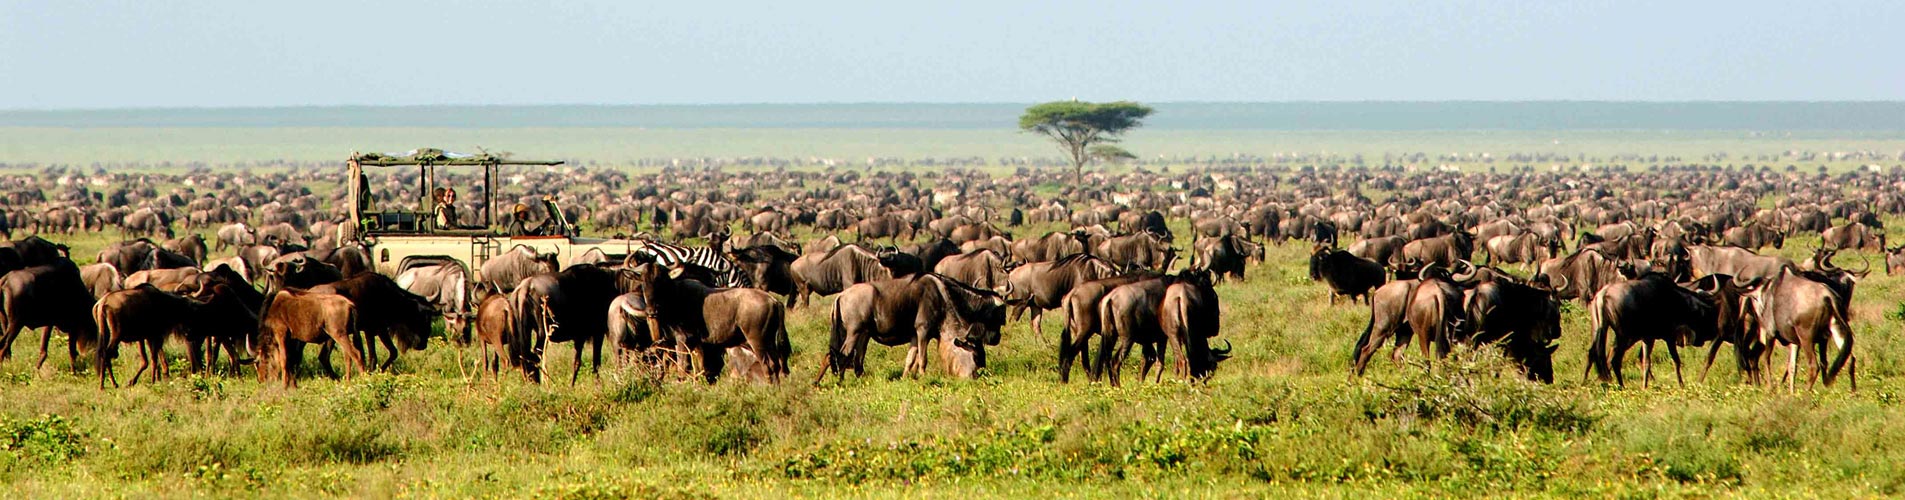 Migration in Tanzania